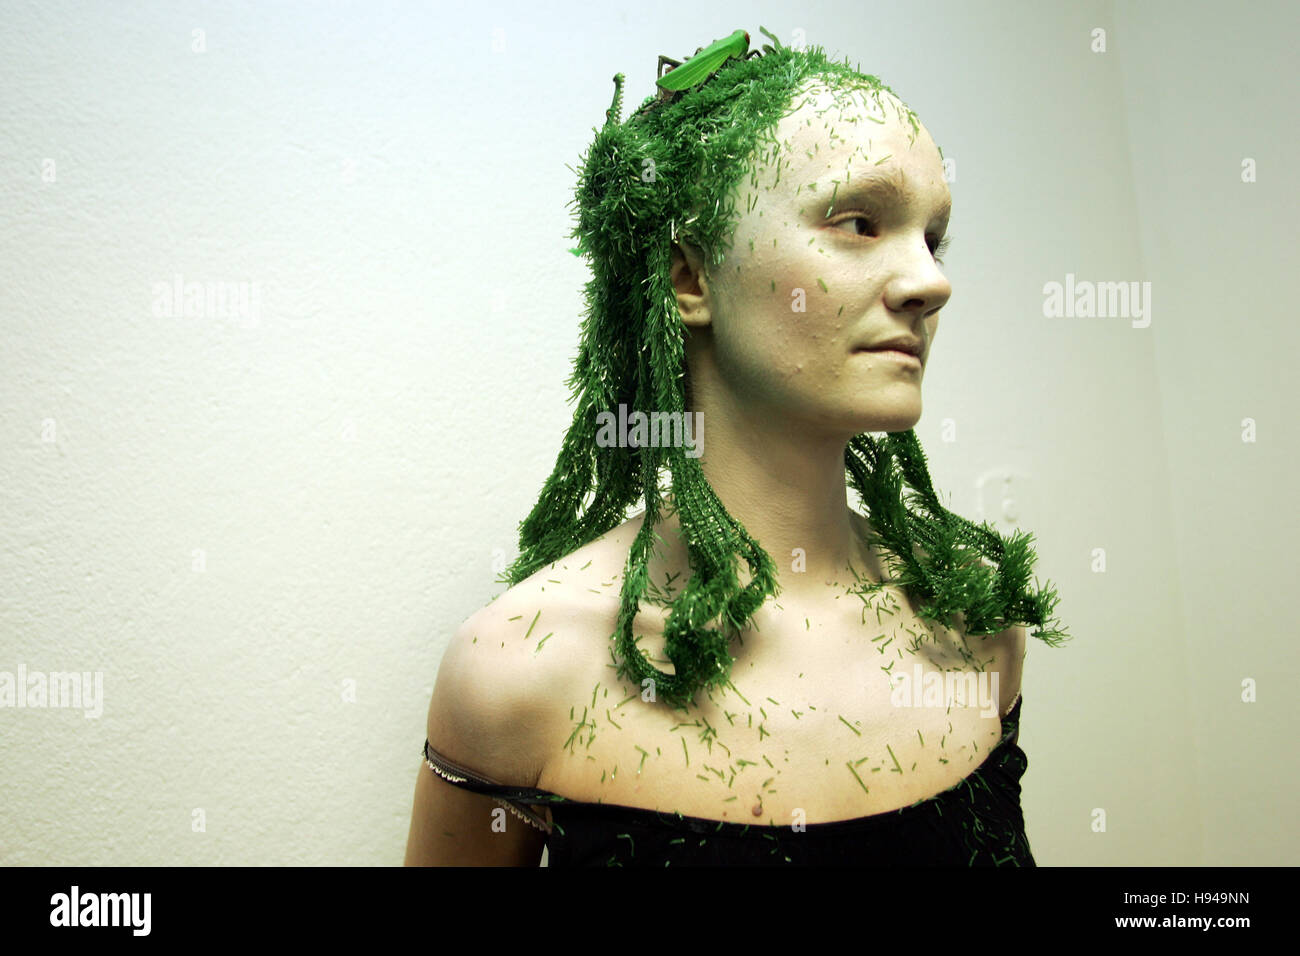 L'image de masque, fantasy green plastik hairstyle Banque D'Images